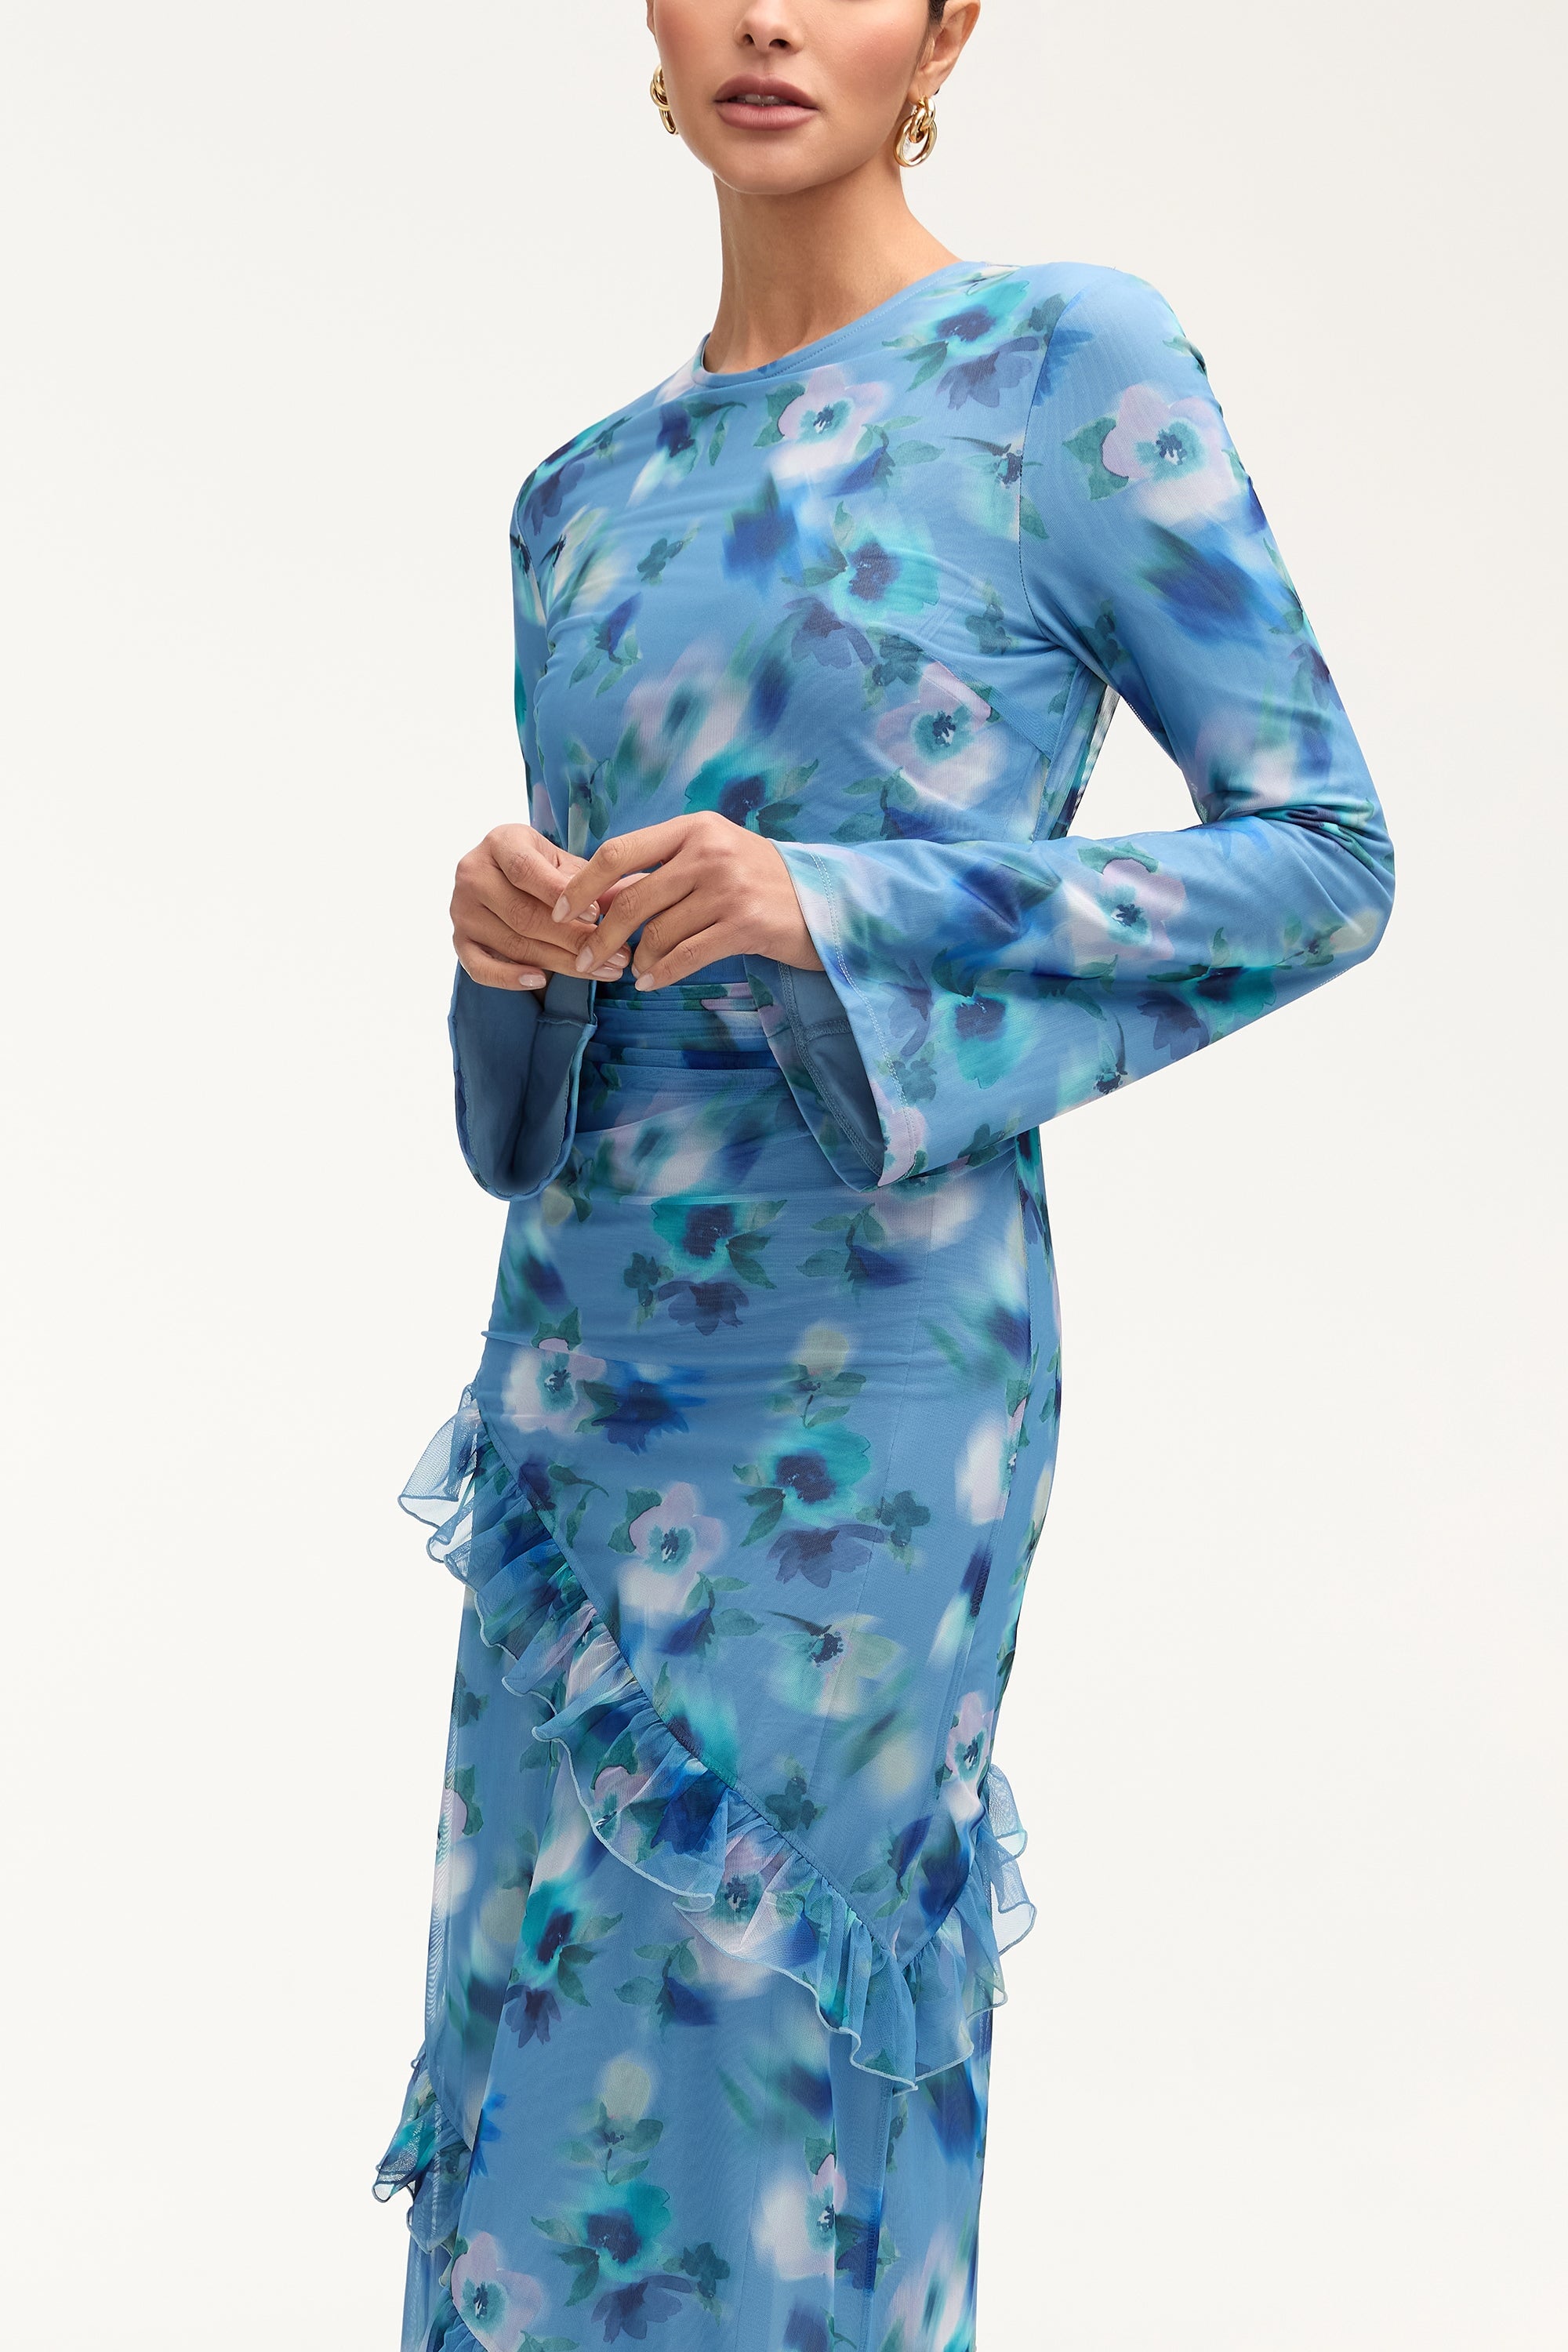 Sabrina Waterfall Mesh Maxi Dress - Floral Clothing Veiled 